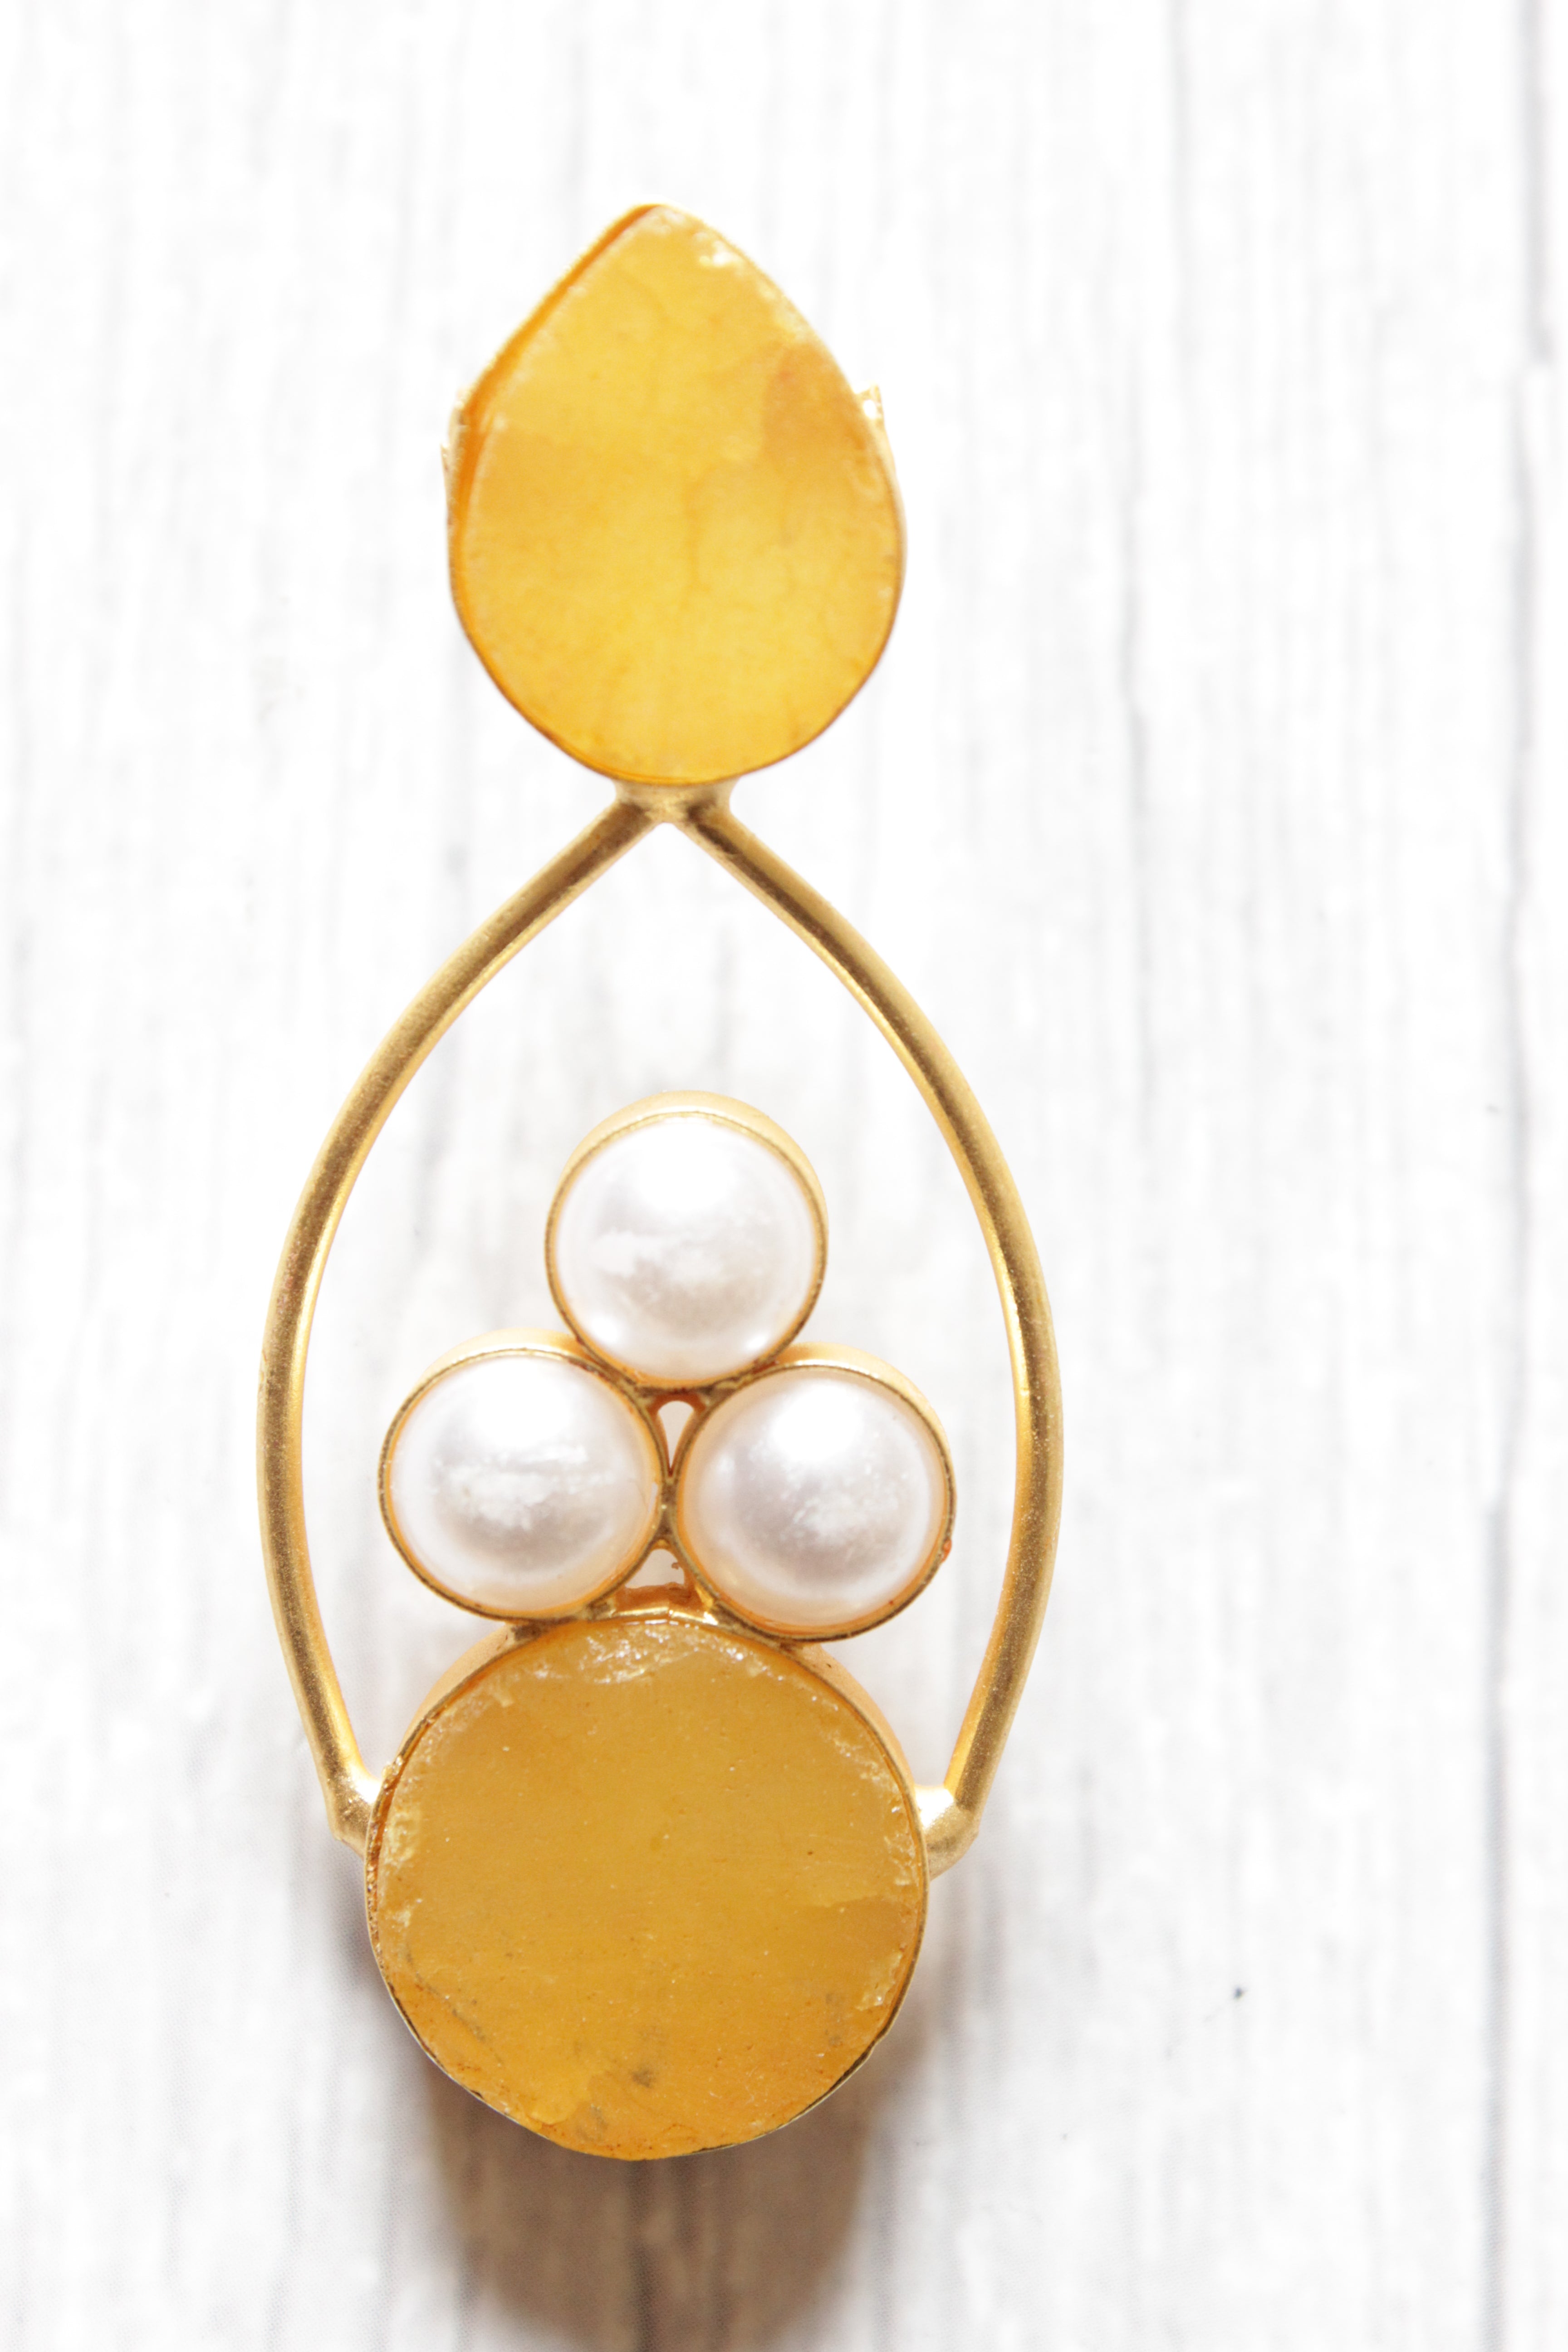 Lemon Yellow Natural Gemstones Embedded Brass Dangler Earrings